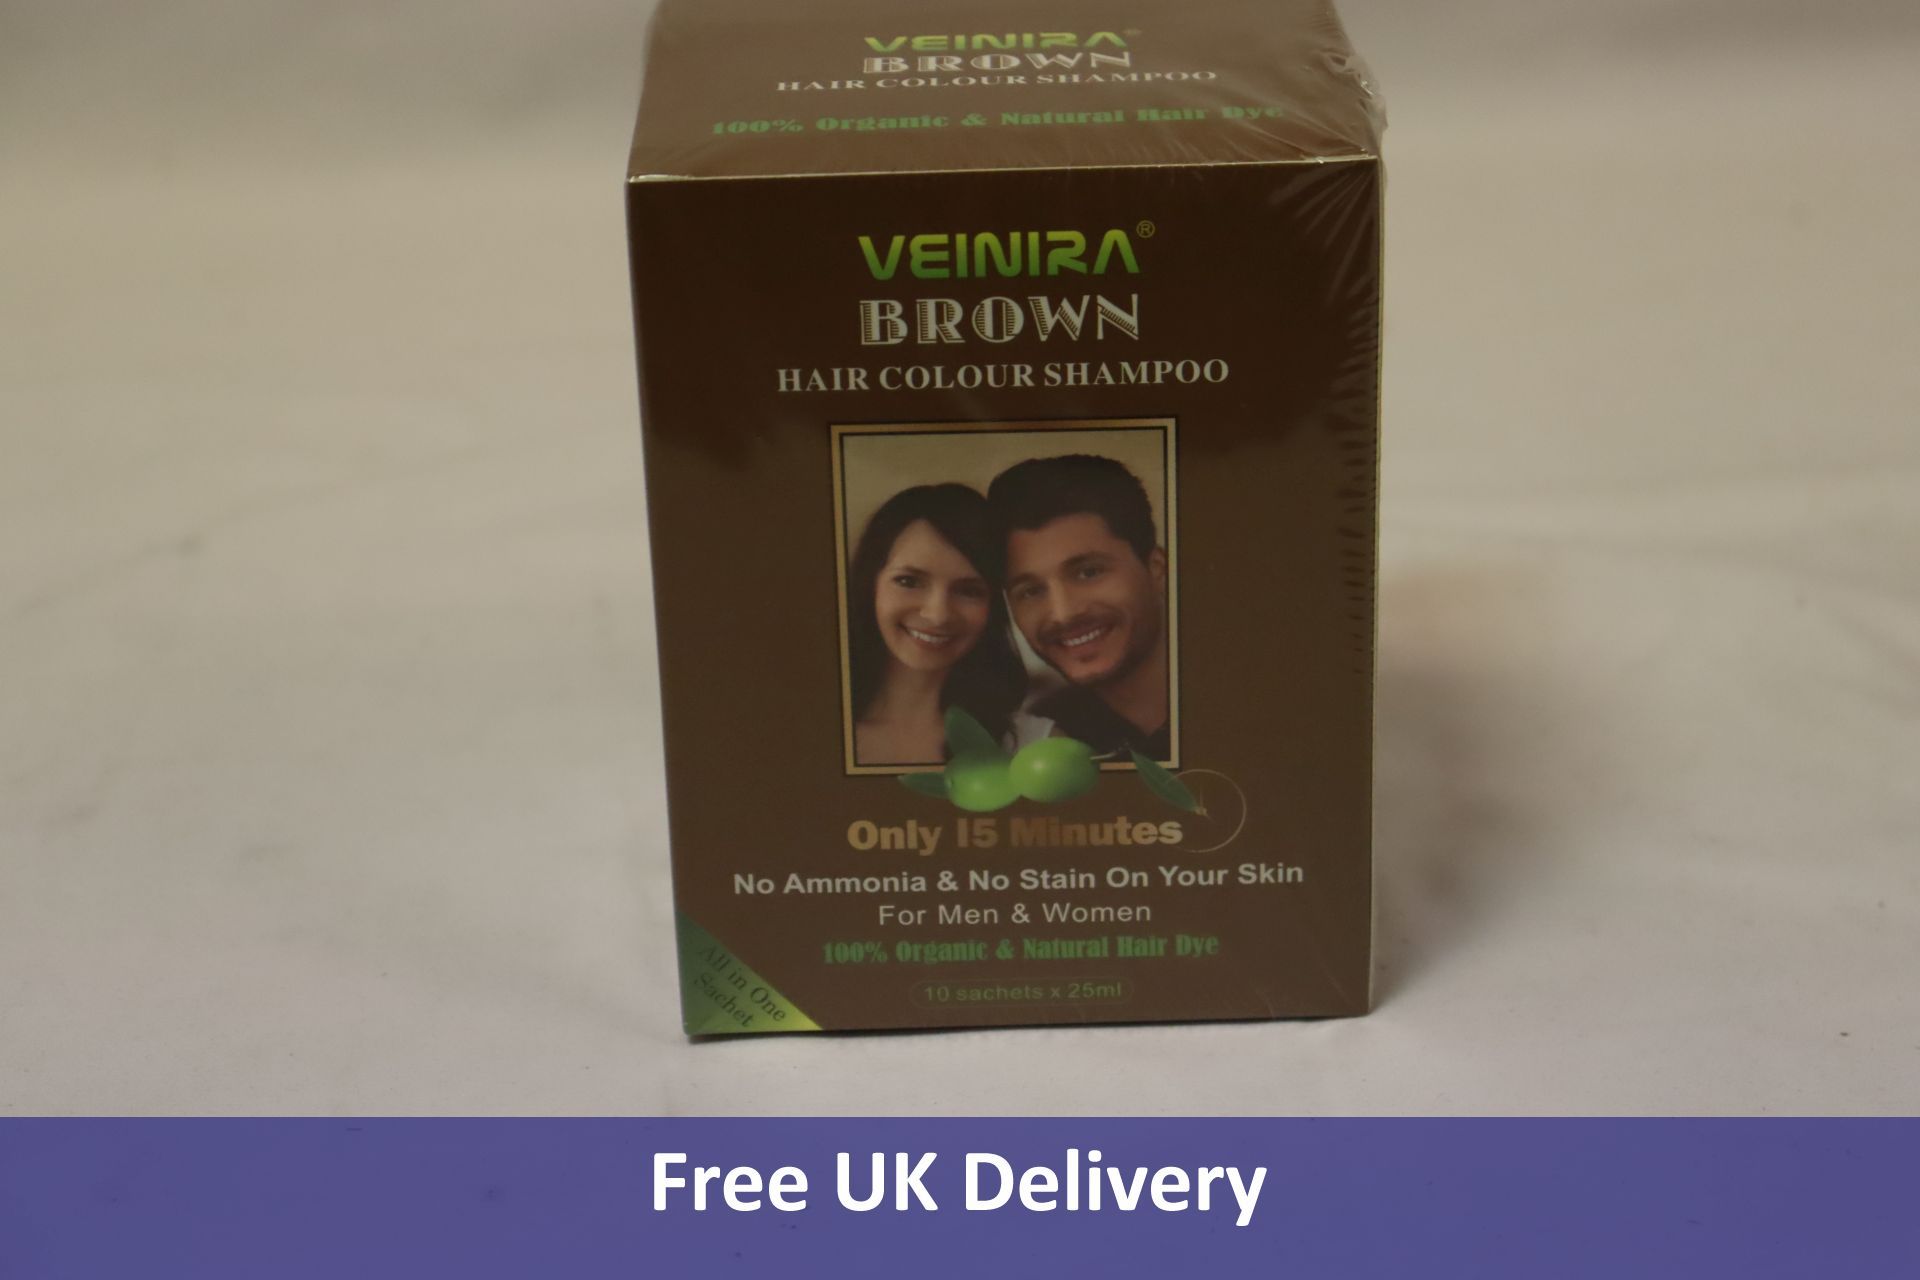 Four Veinira Brown Hair Colour Shampoo, 10 Packs of 25ml, BBE 02/26